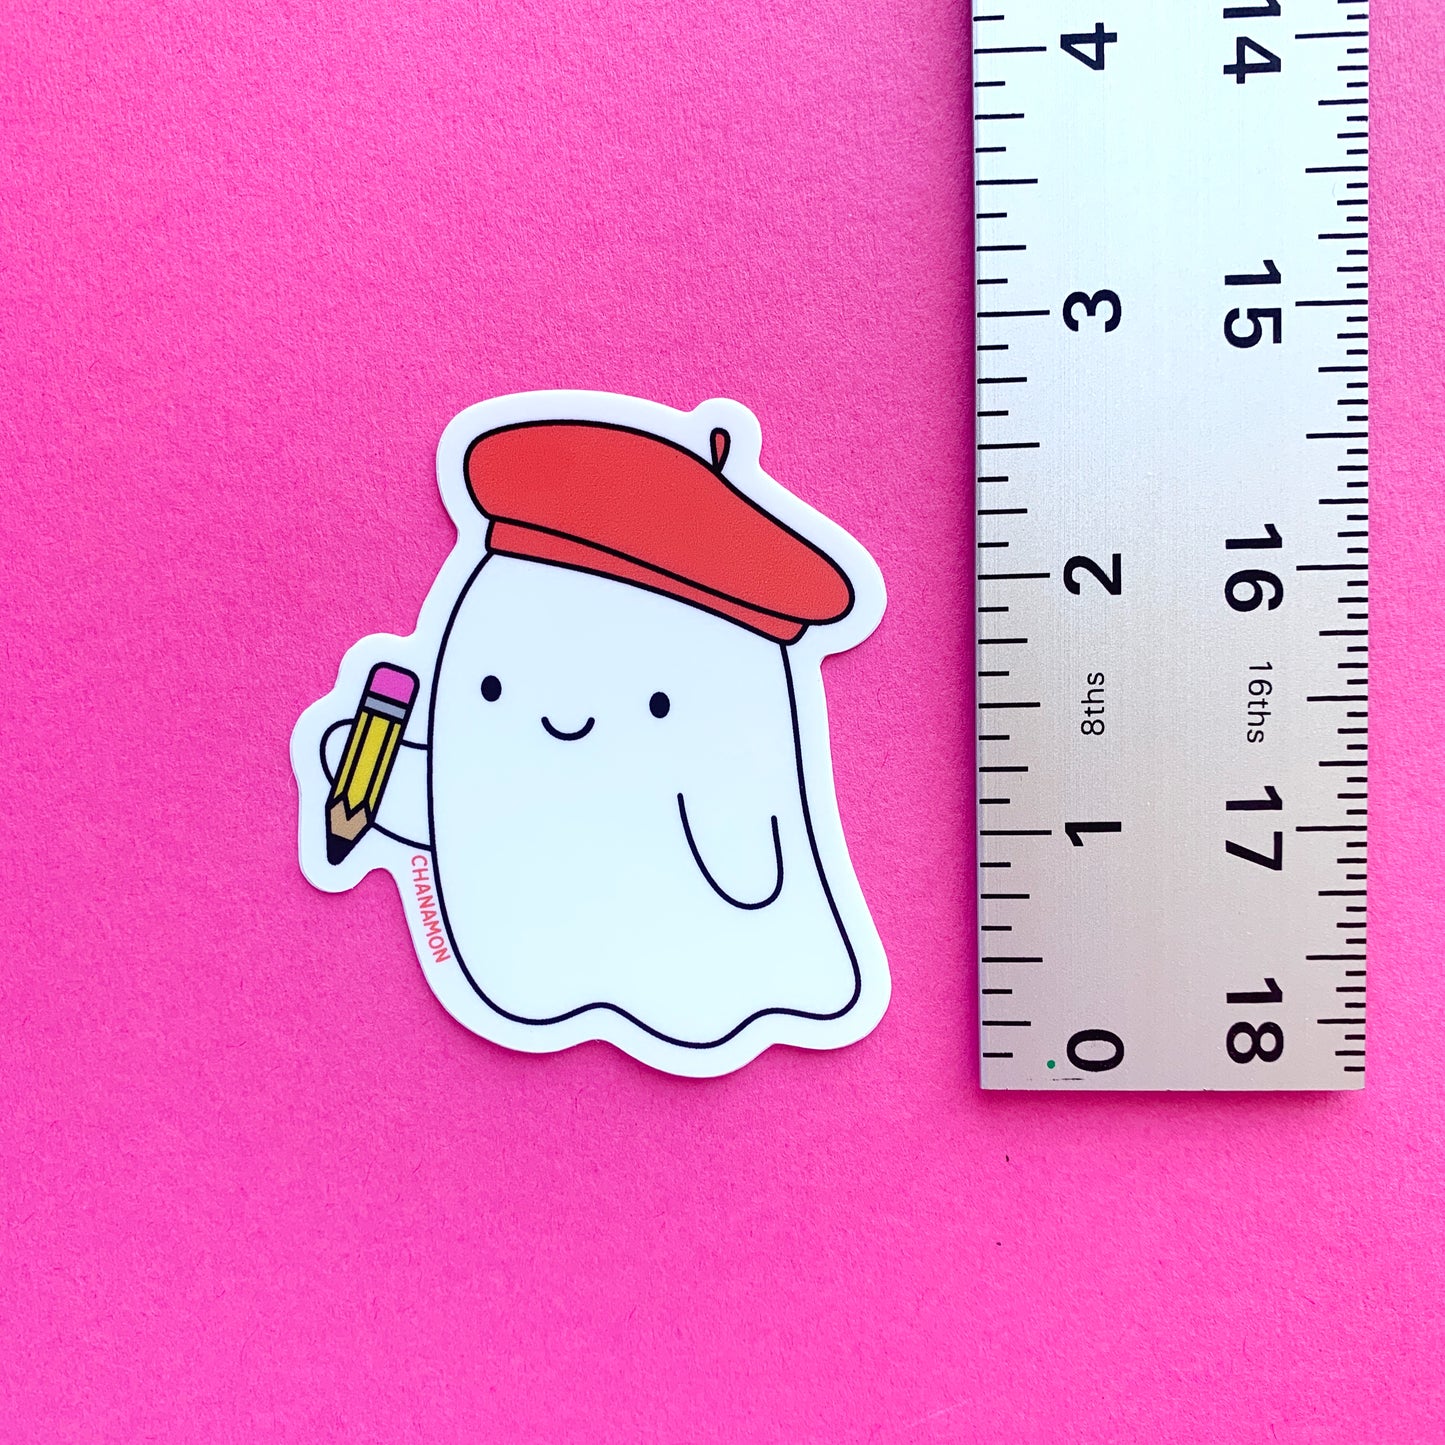 Artist Ghost Sticker